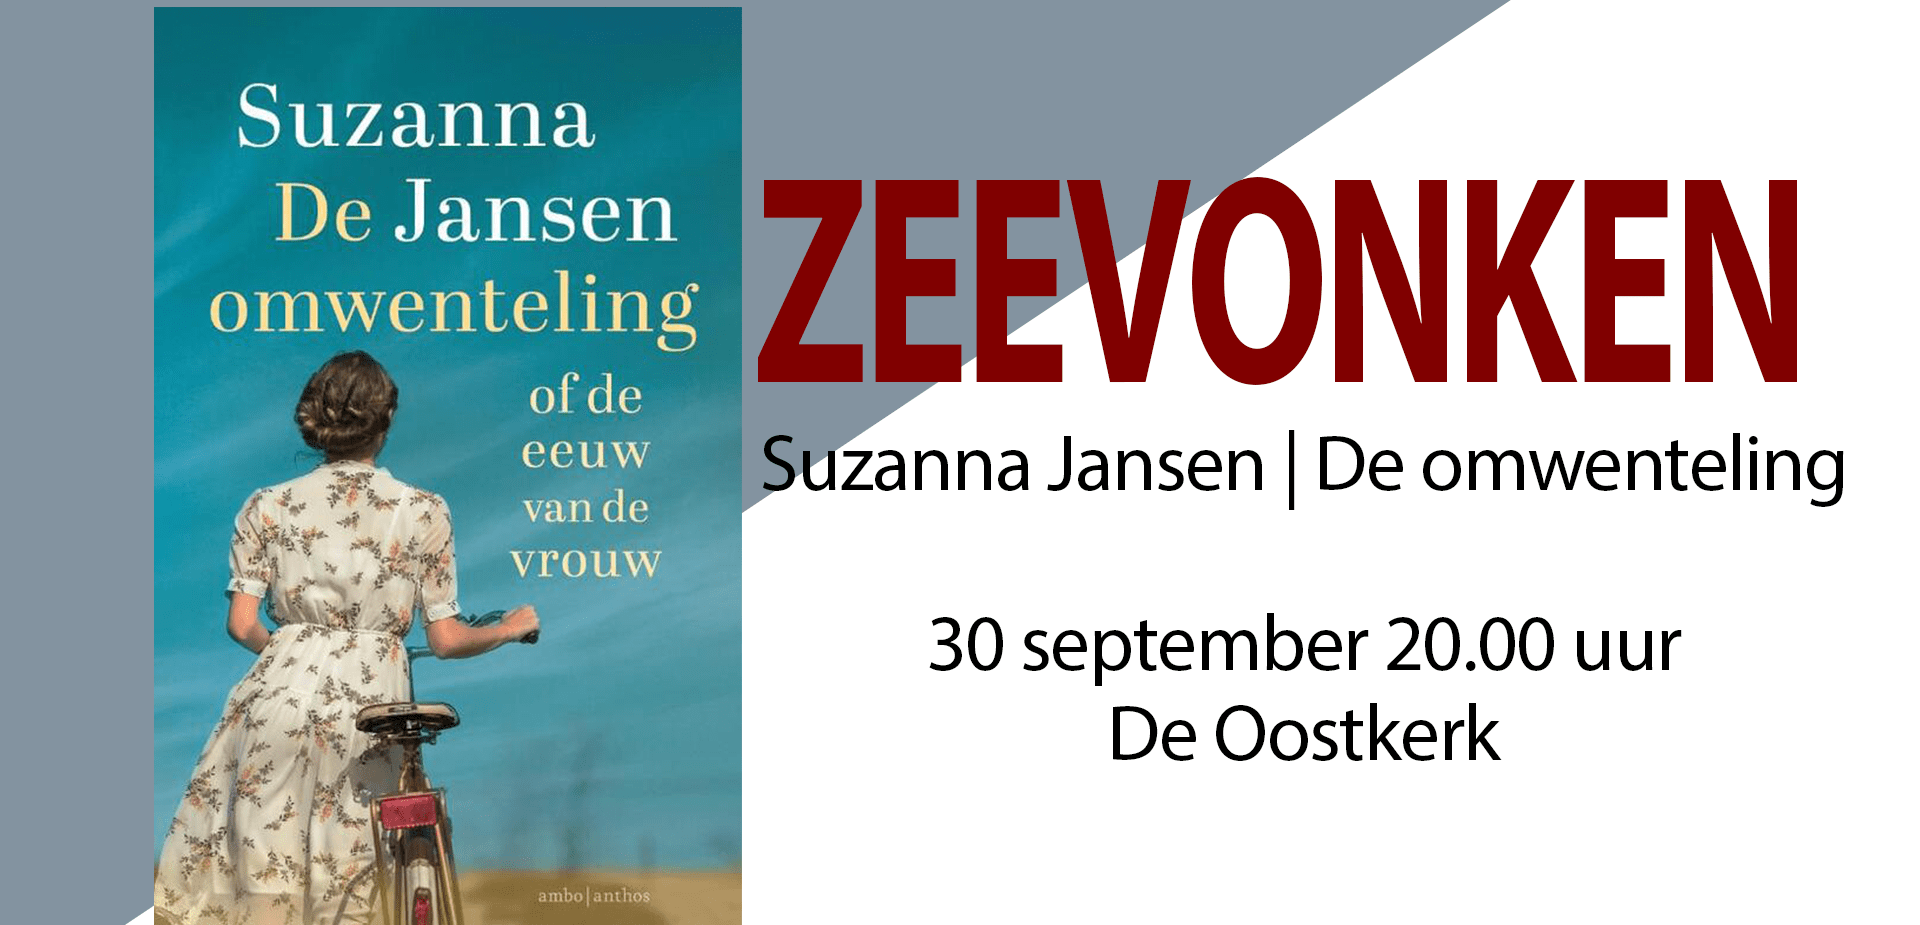 Zeevonken Suzanna Jansen